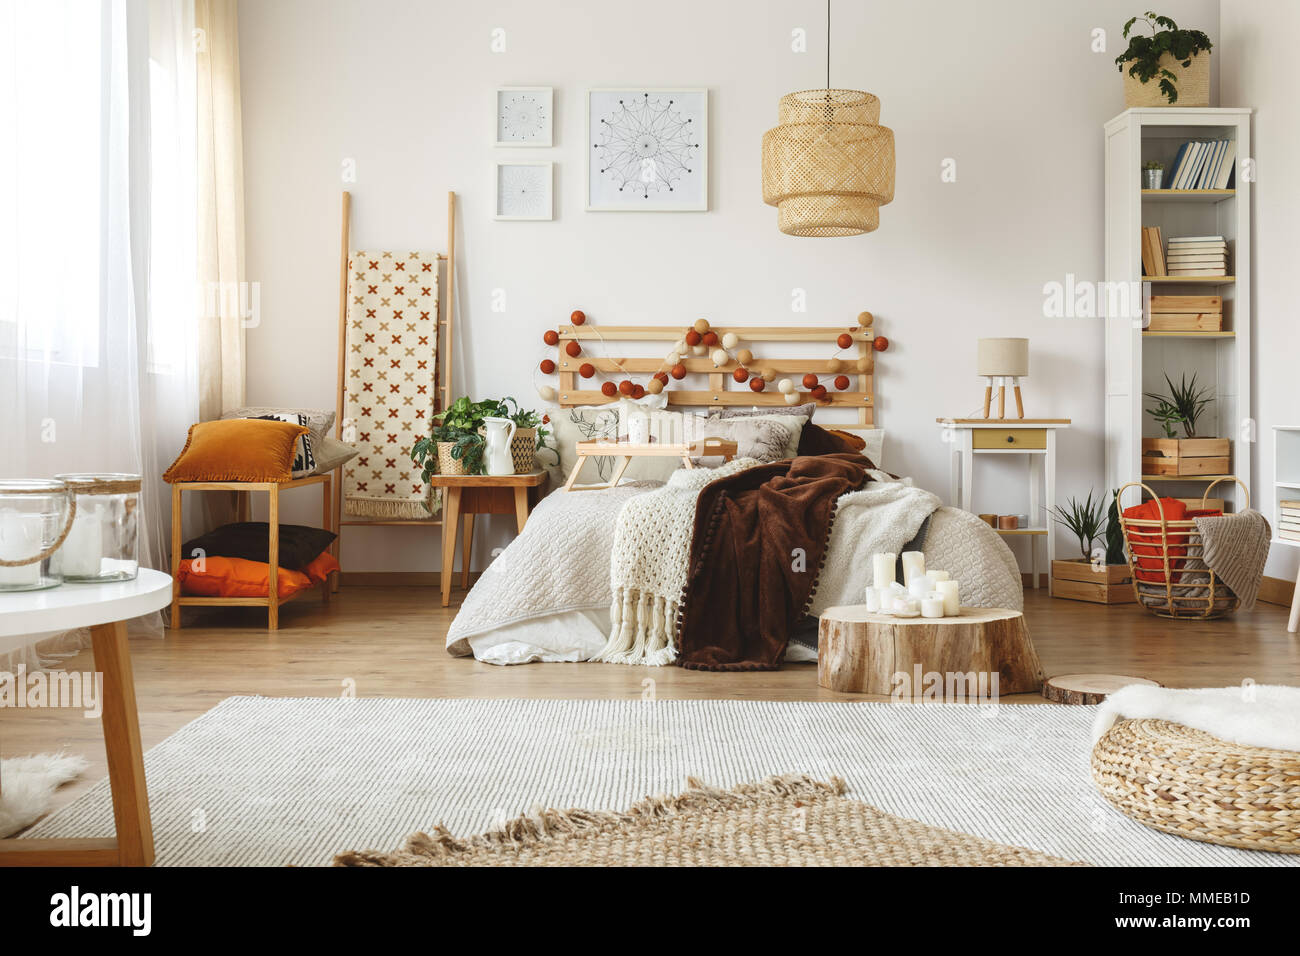 Spaziosa e luminosa camera da letto accogliente con fresche piante e decorazioni in legno Foto Stock